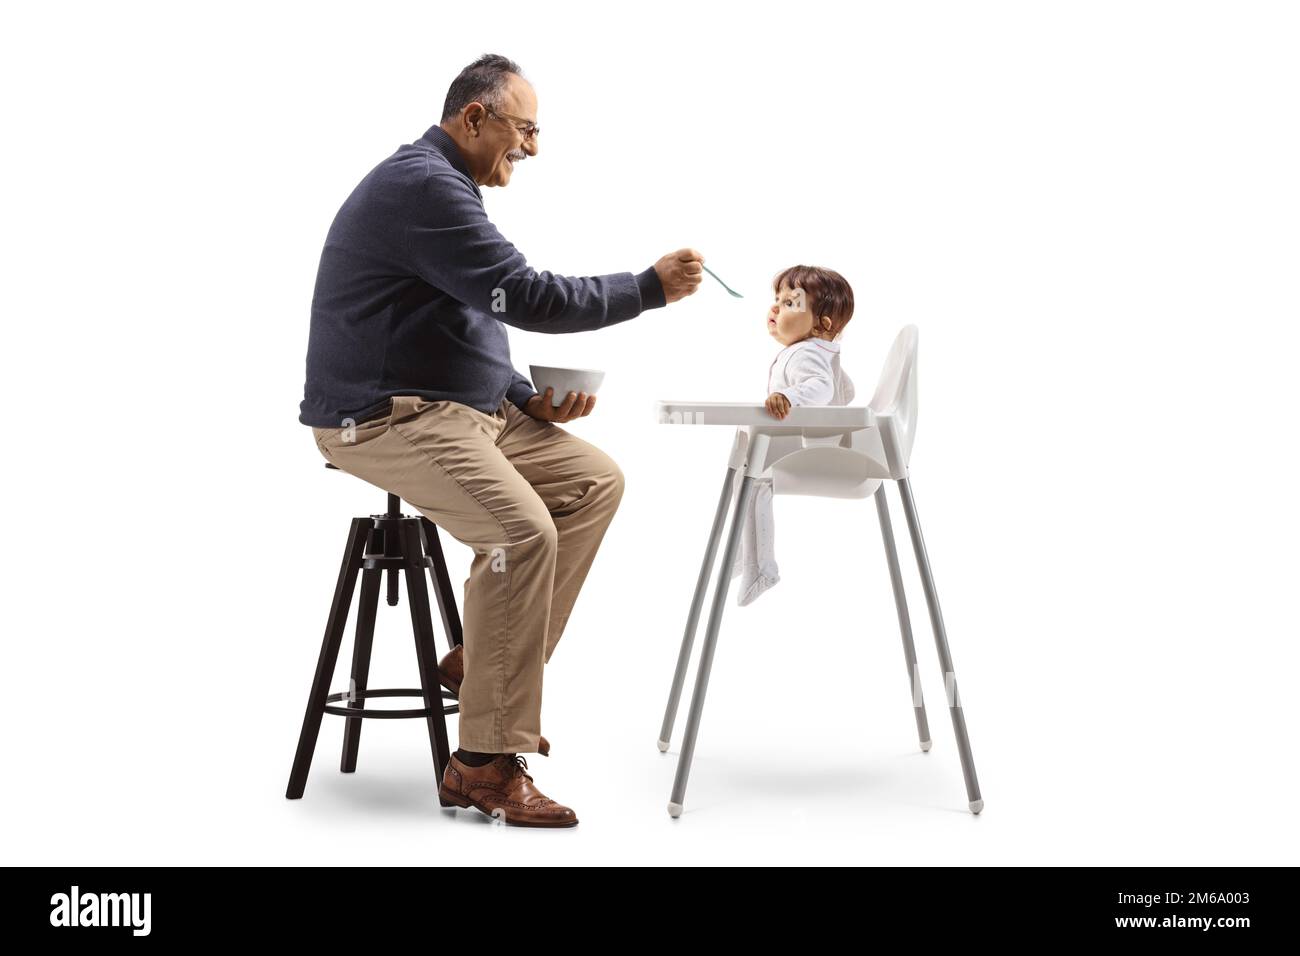 Inquadratura di un uomo maturo seduto e che allatta un bambino con un cucchiaio isolato su sfondo bianco Foto Stock